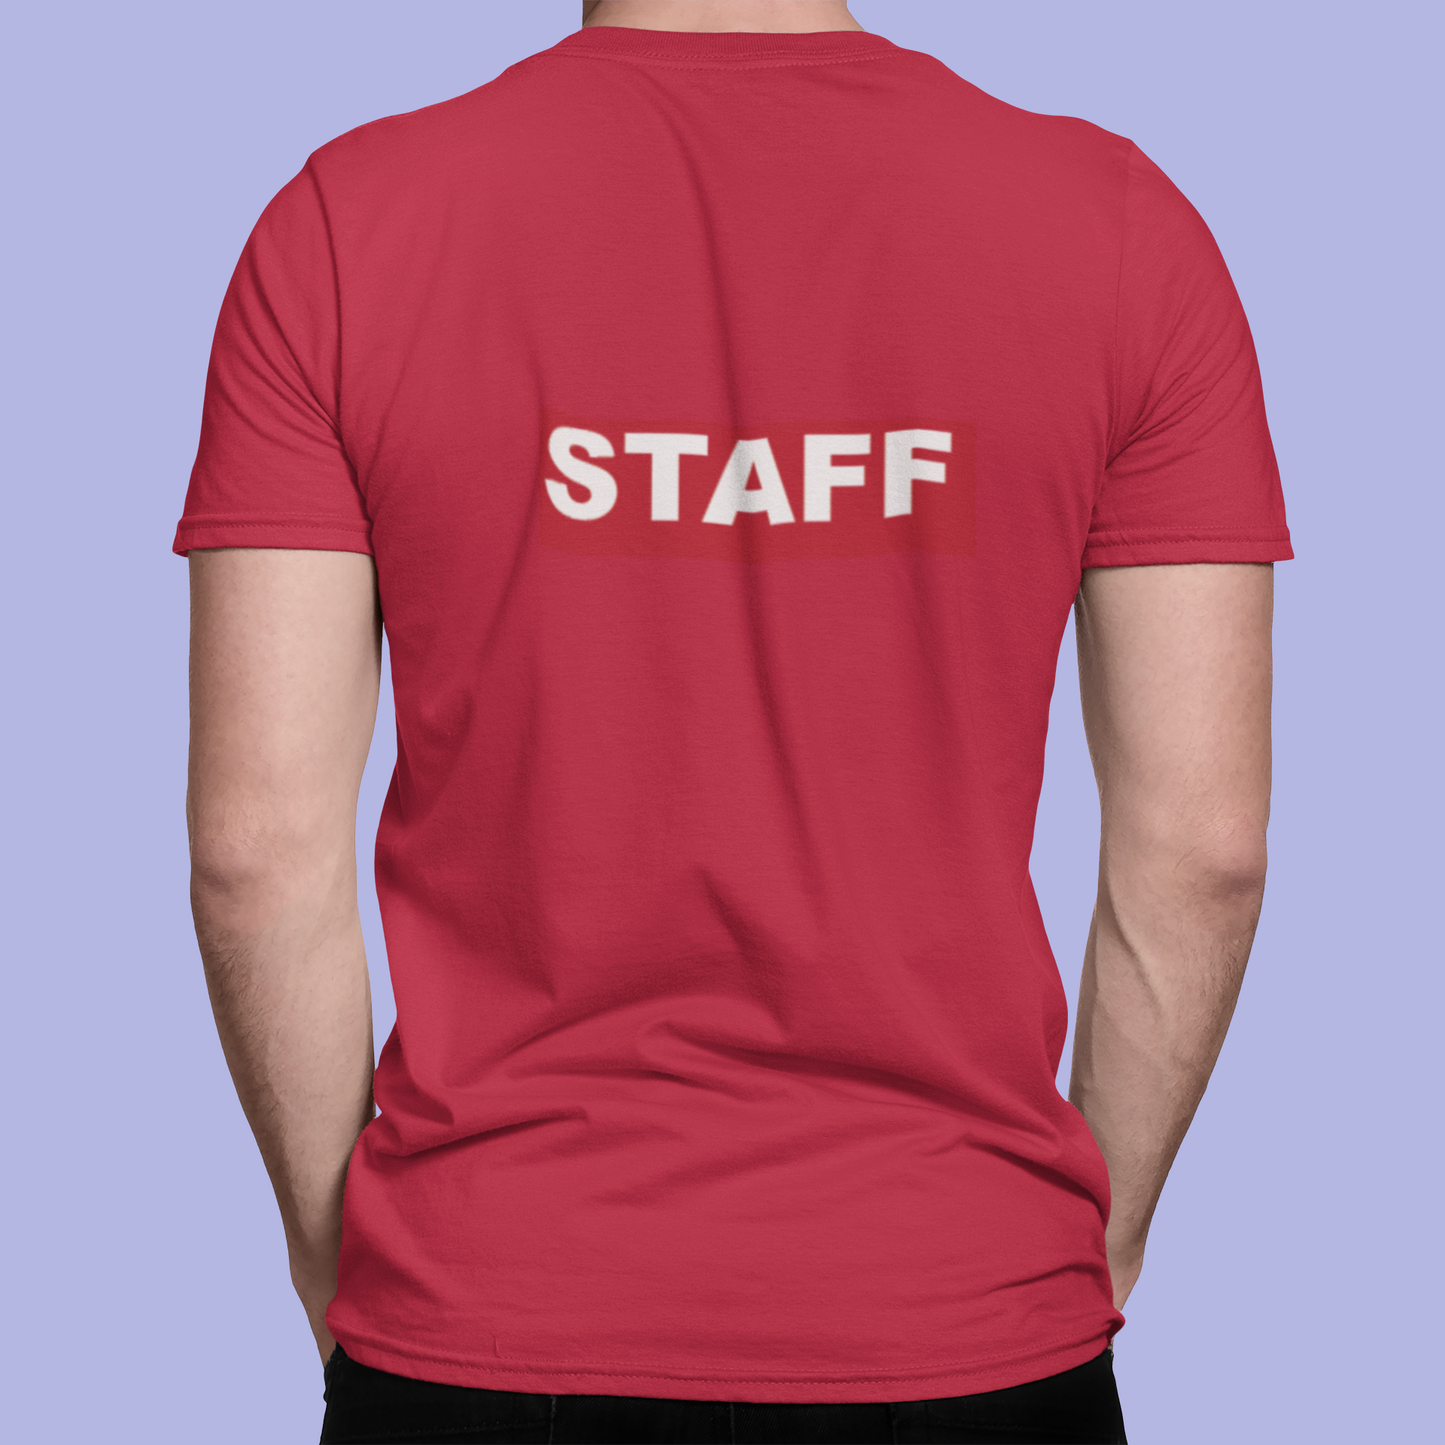 The Staff Tee